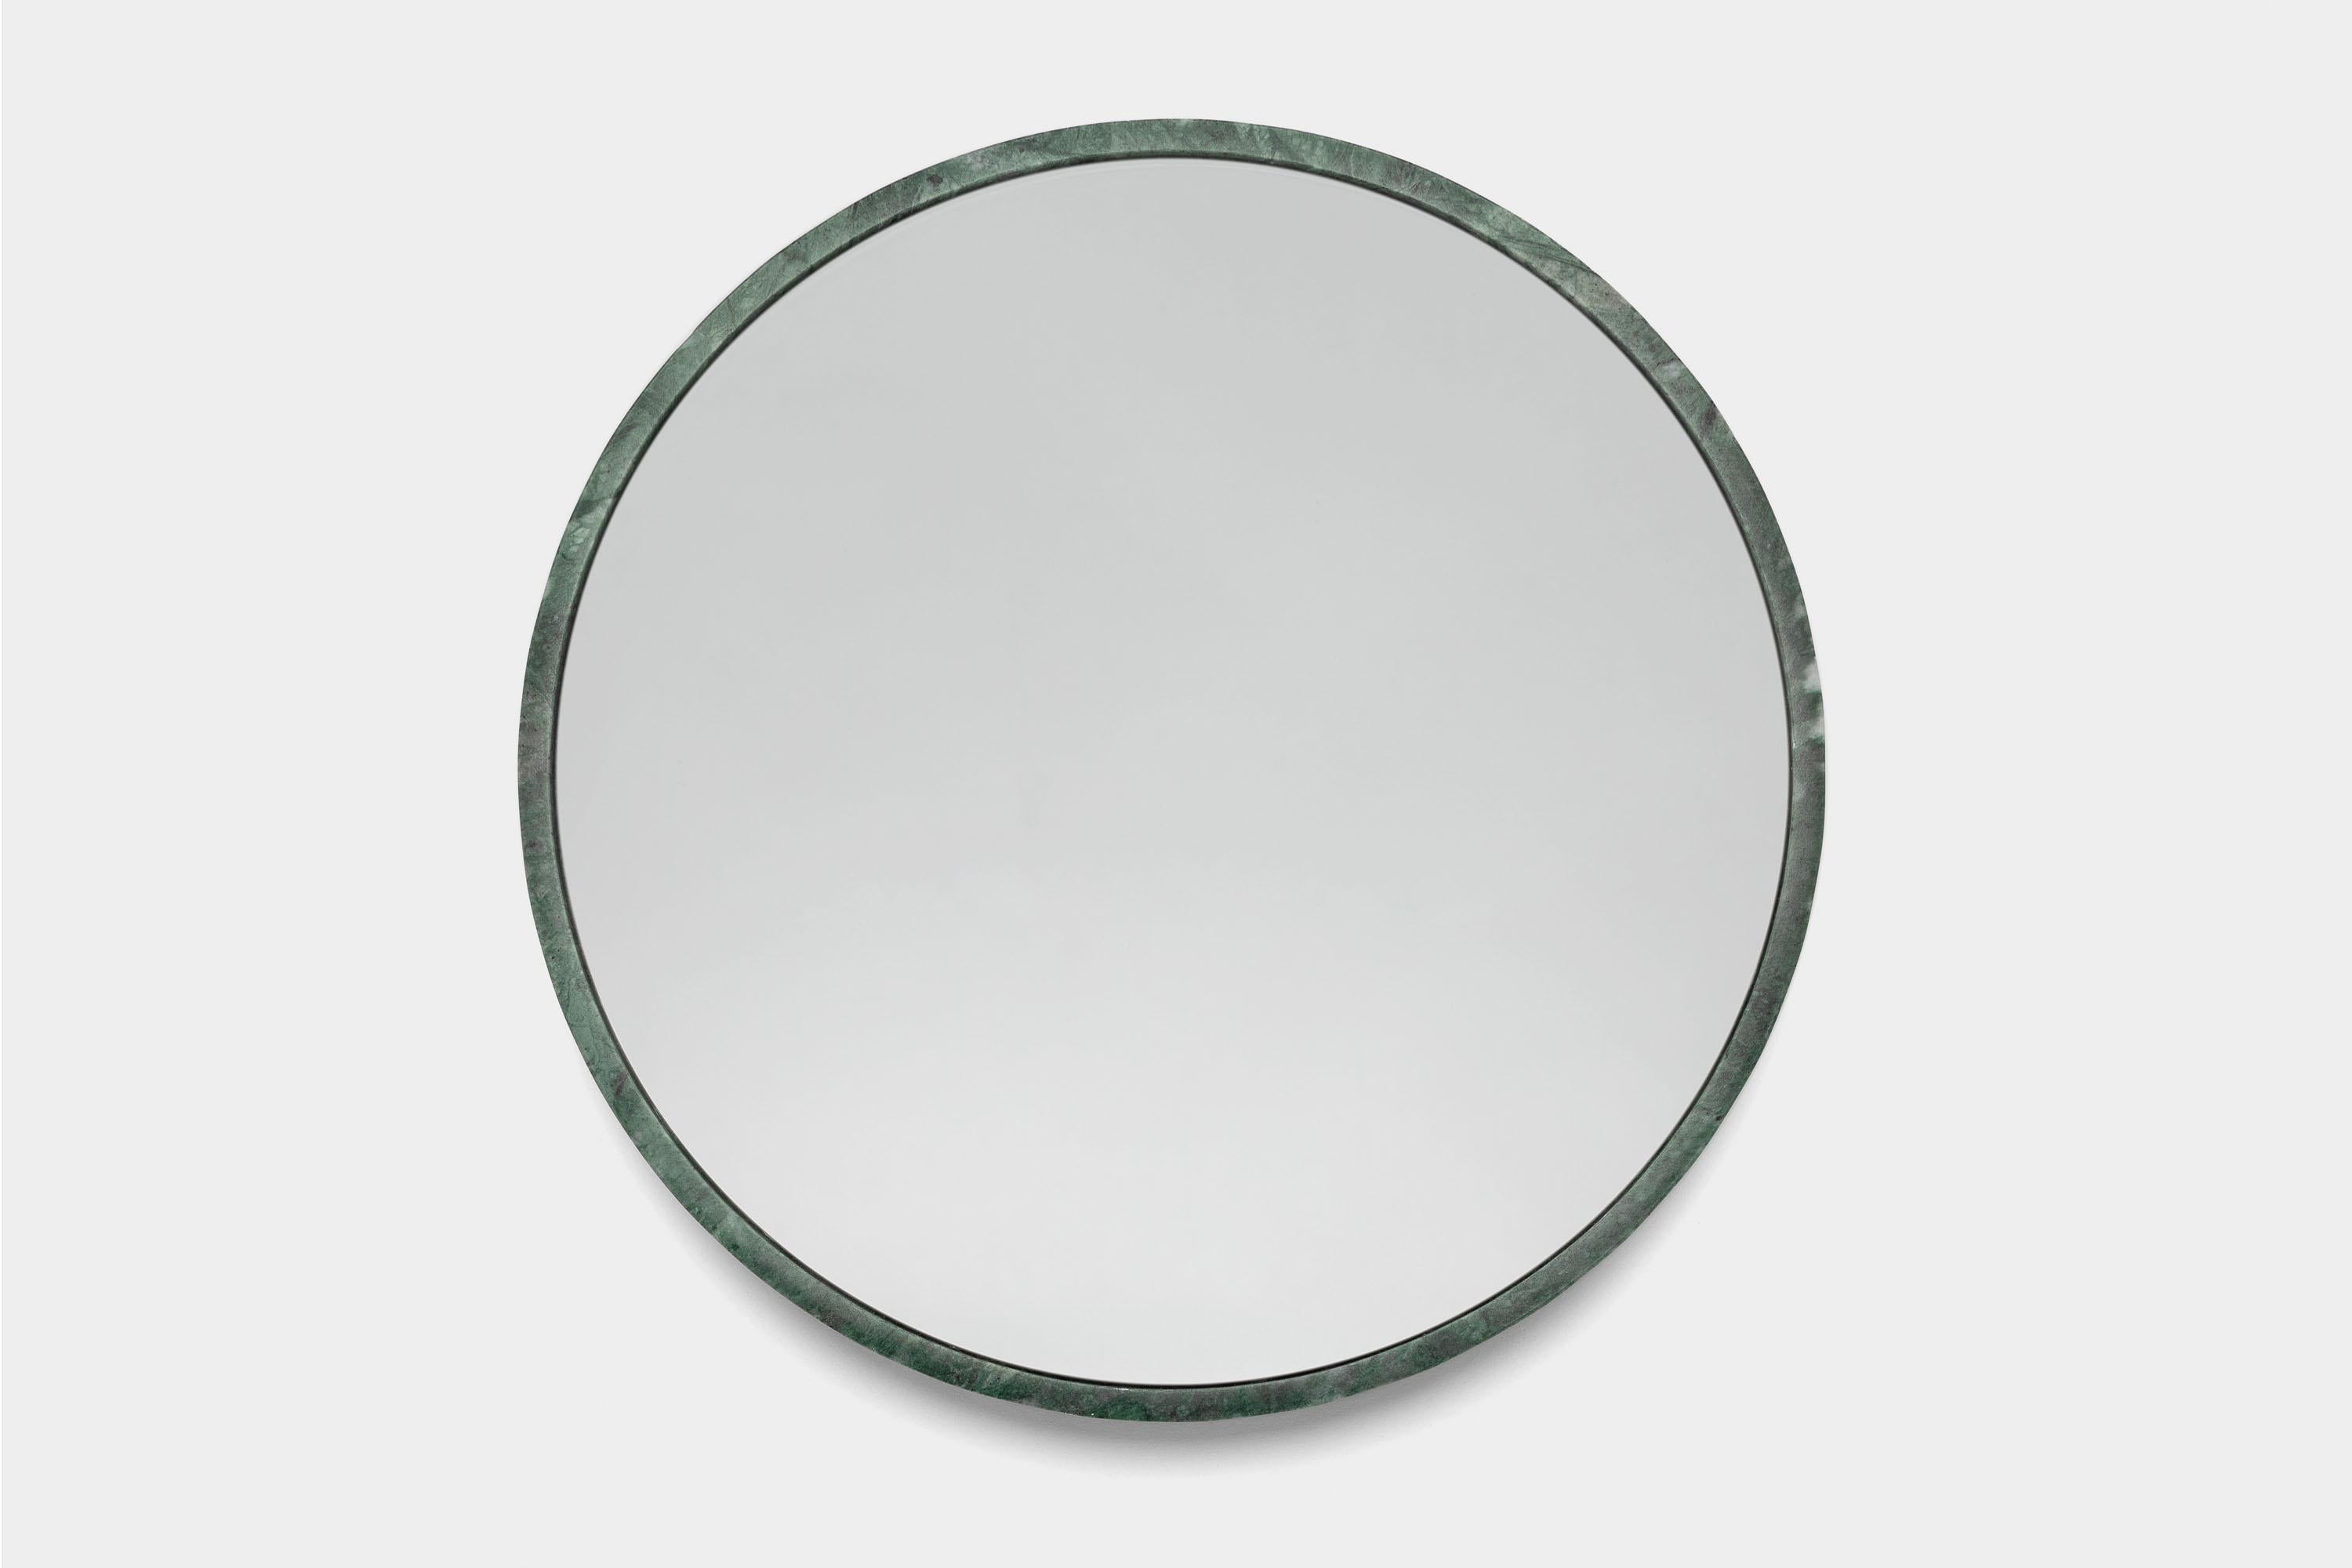 Post-Modern Mirage Specchio by Studio Intervallo For Sale